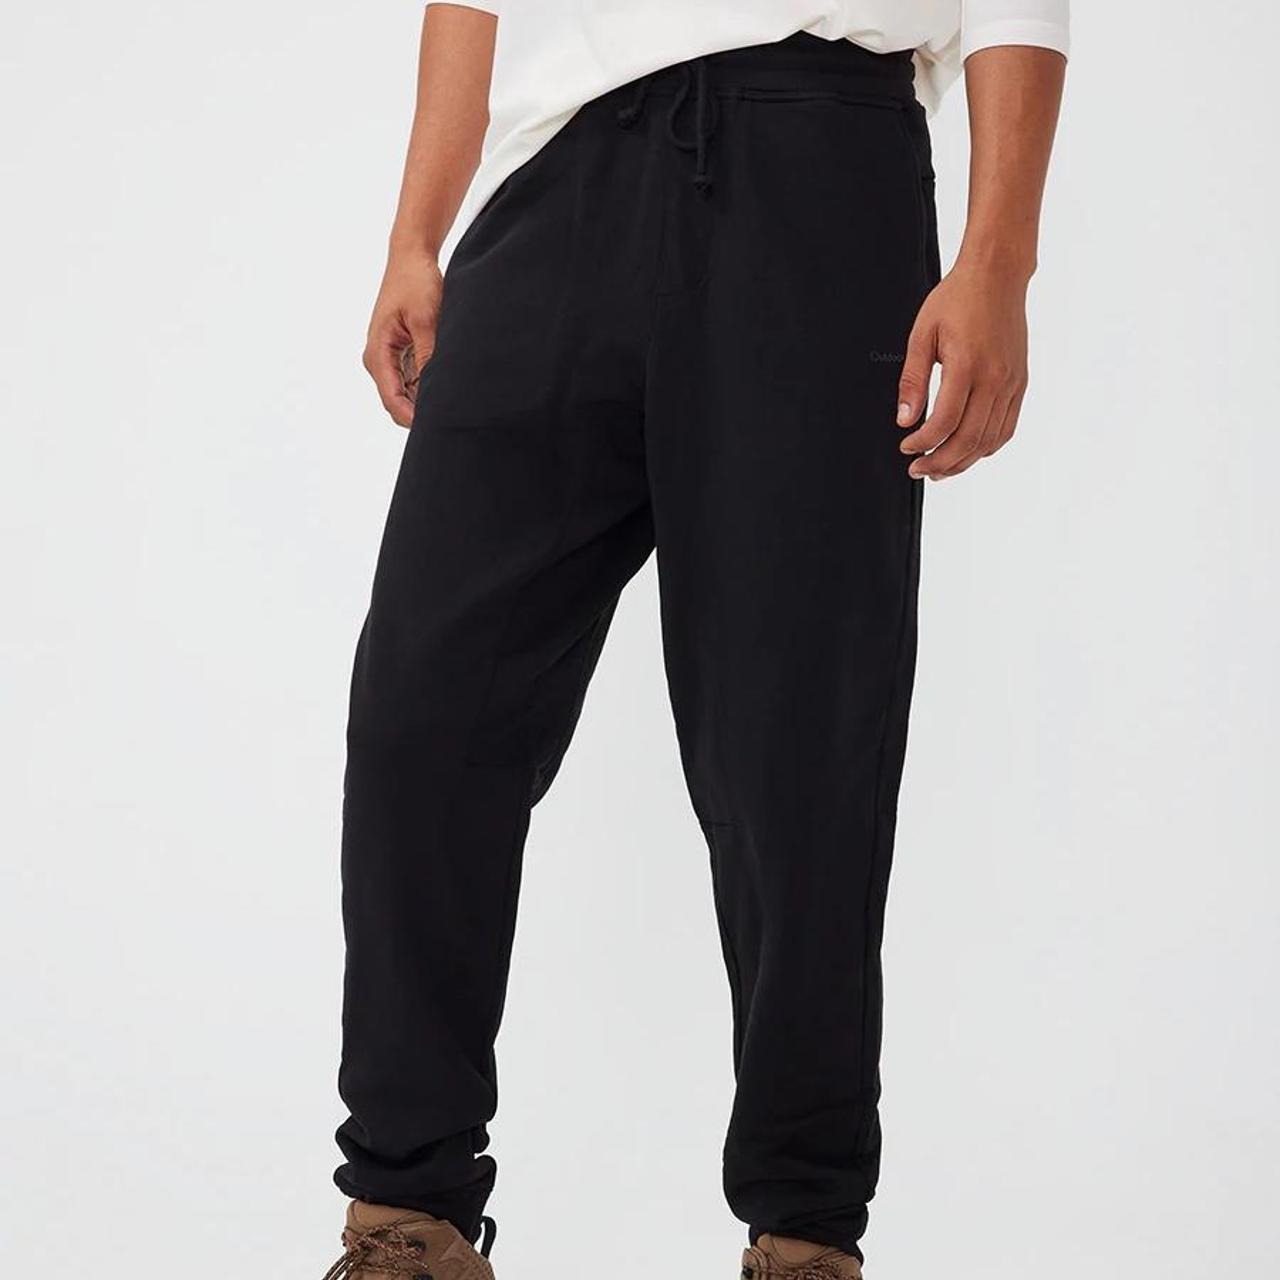 Outdoor Voices Pickup Black Sweatpants. Size: Large.... - Depop